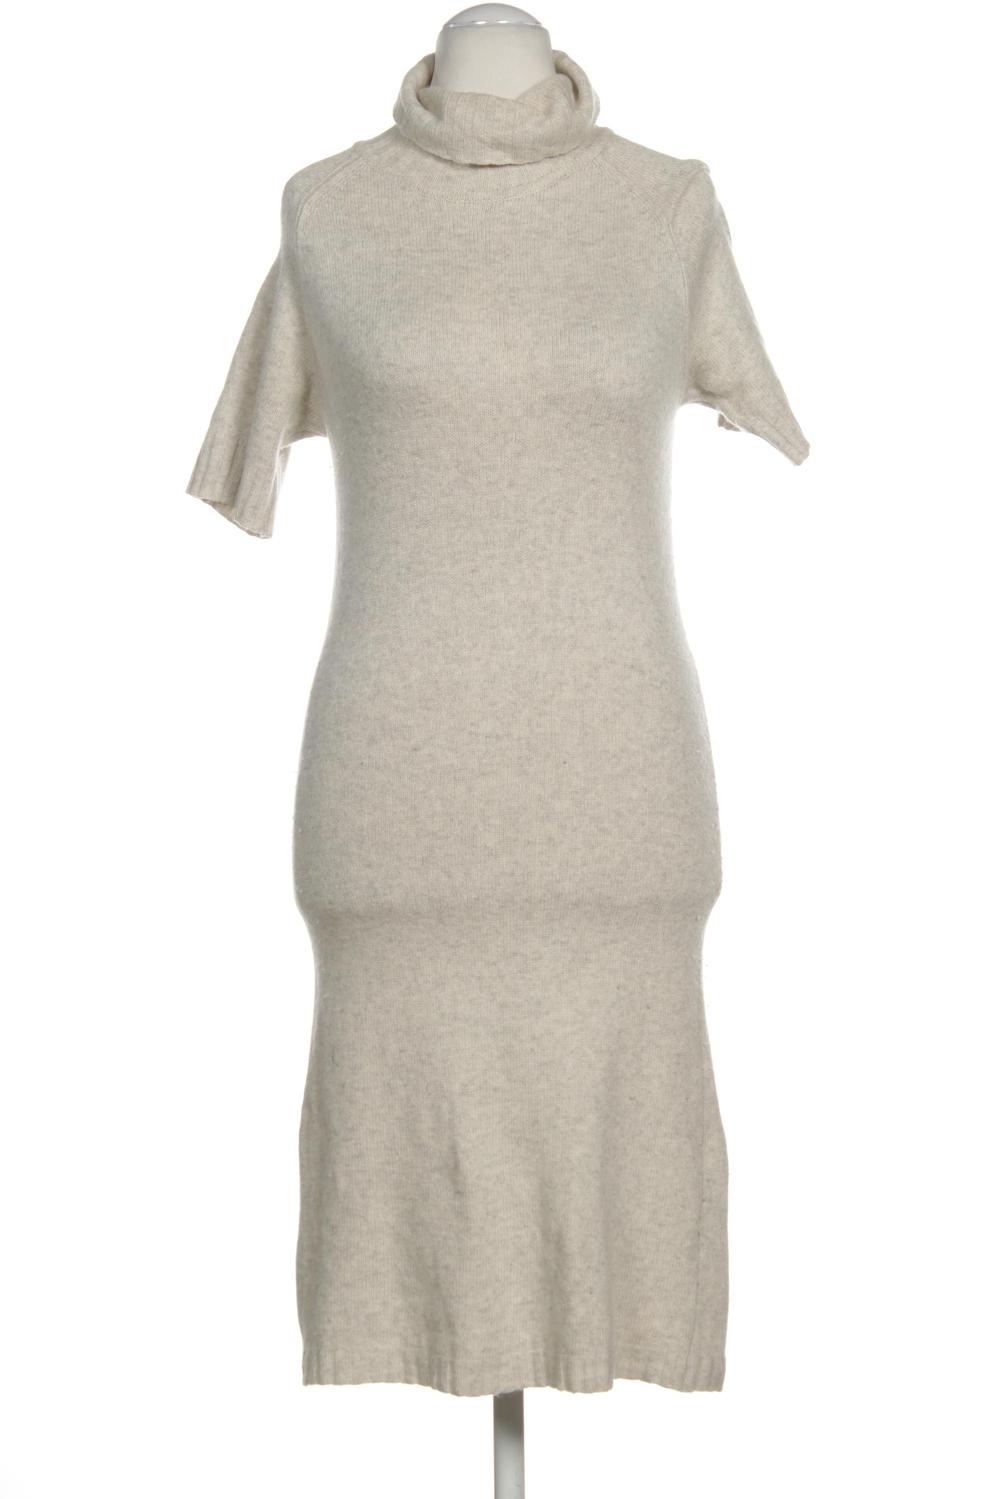 Madeleine Damen Kleid DE 34 Second Hand kaufen | ubup